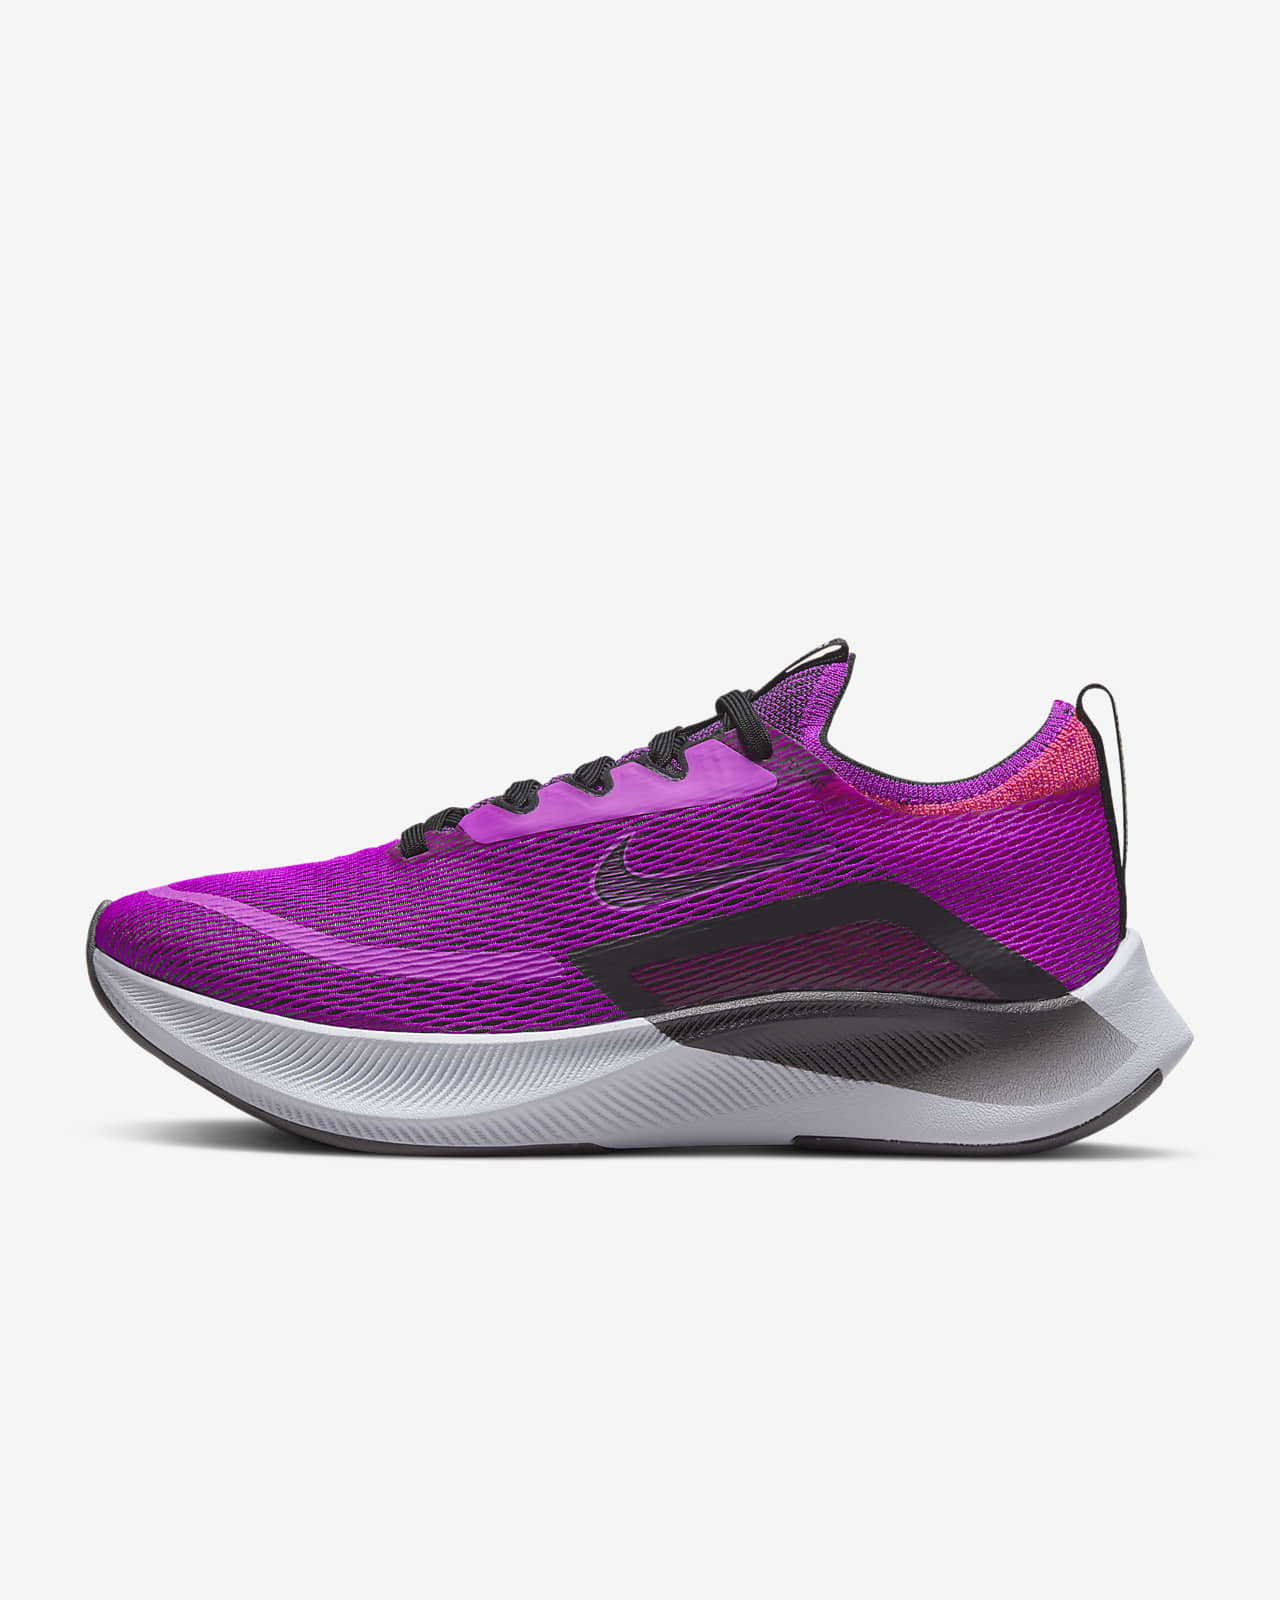 Γυναικείο παπούτσι για τρέξιμο σε δρόμο Nike Zoom Fly 4